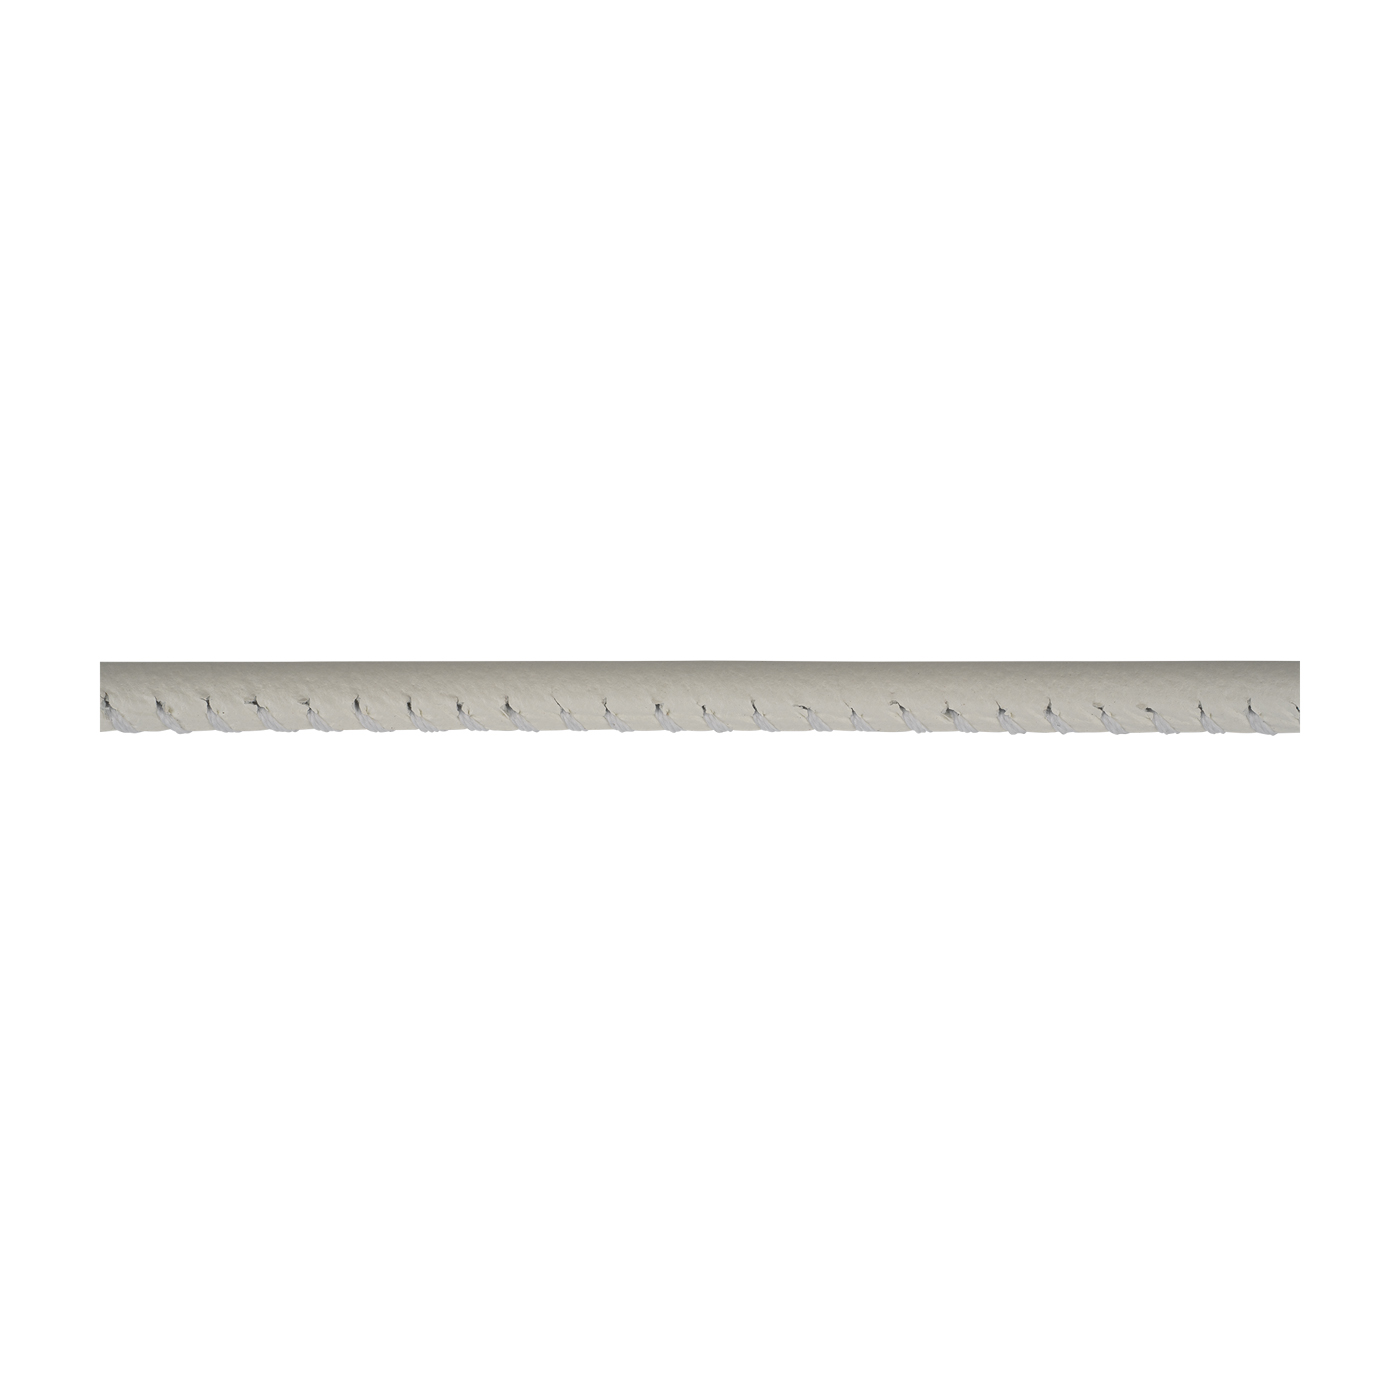 Lederband, weiß, ø 3 mm, aus Kalbsleder - 1 m